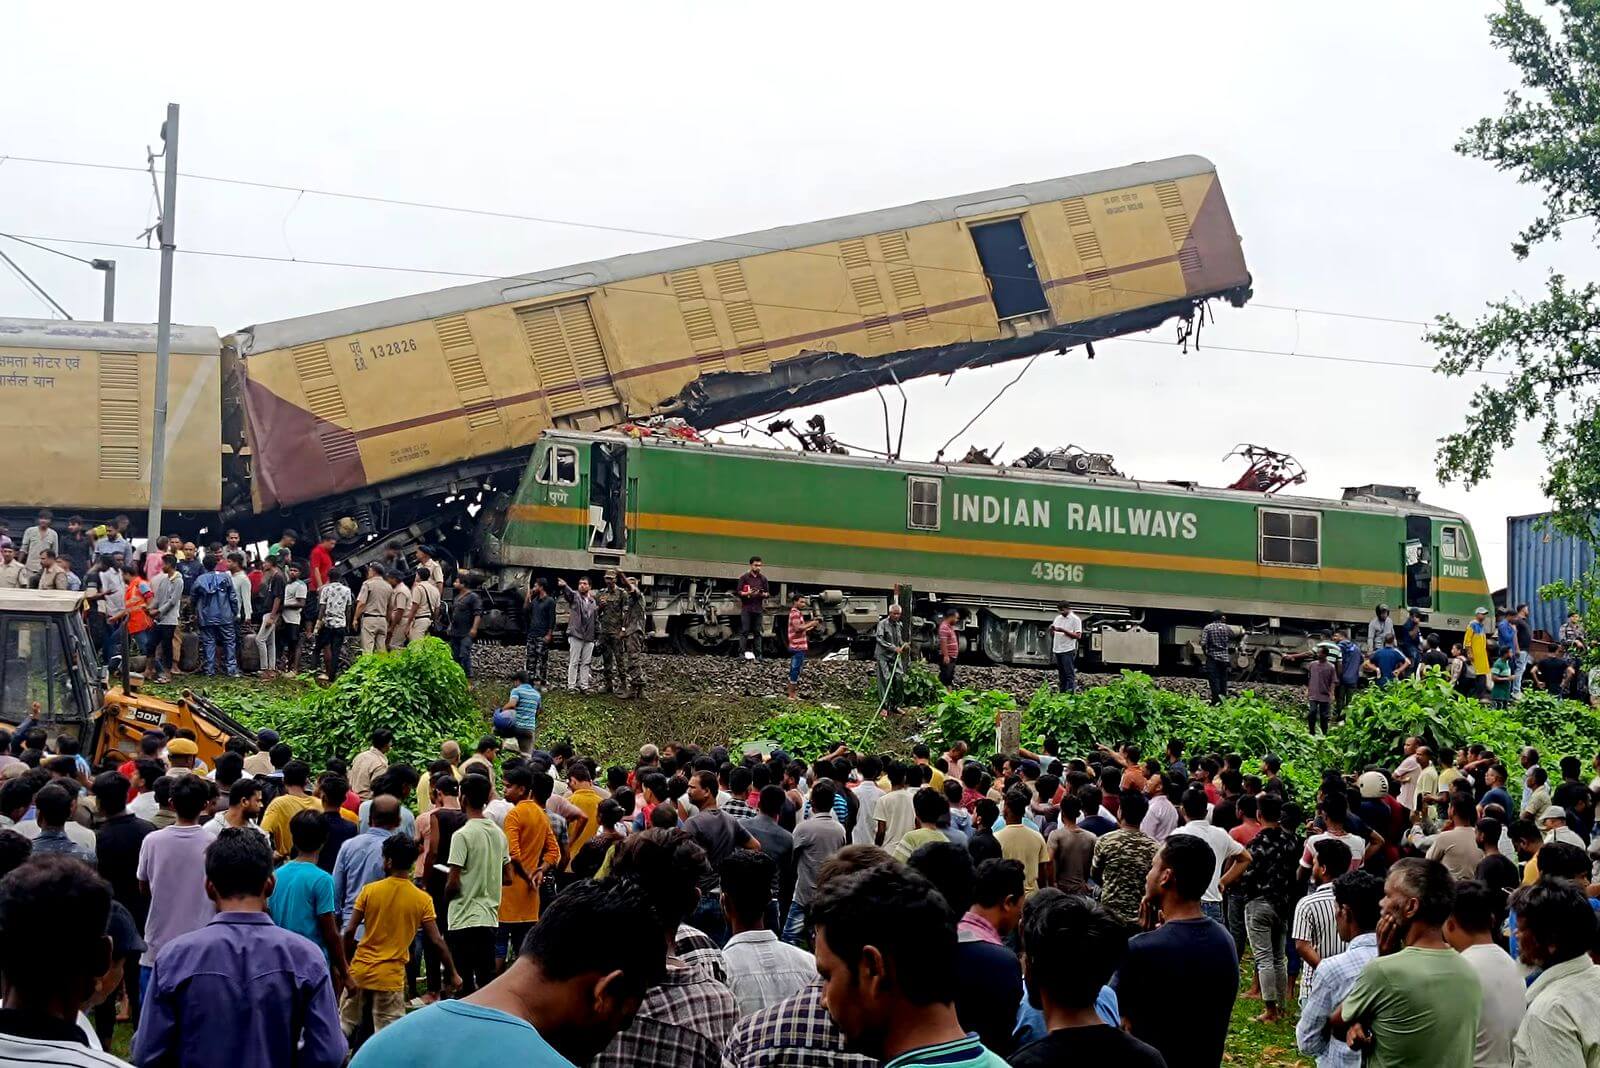 Choque de trenes en India deja al menos 15 muertos y decenas de heridos